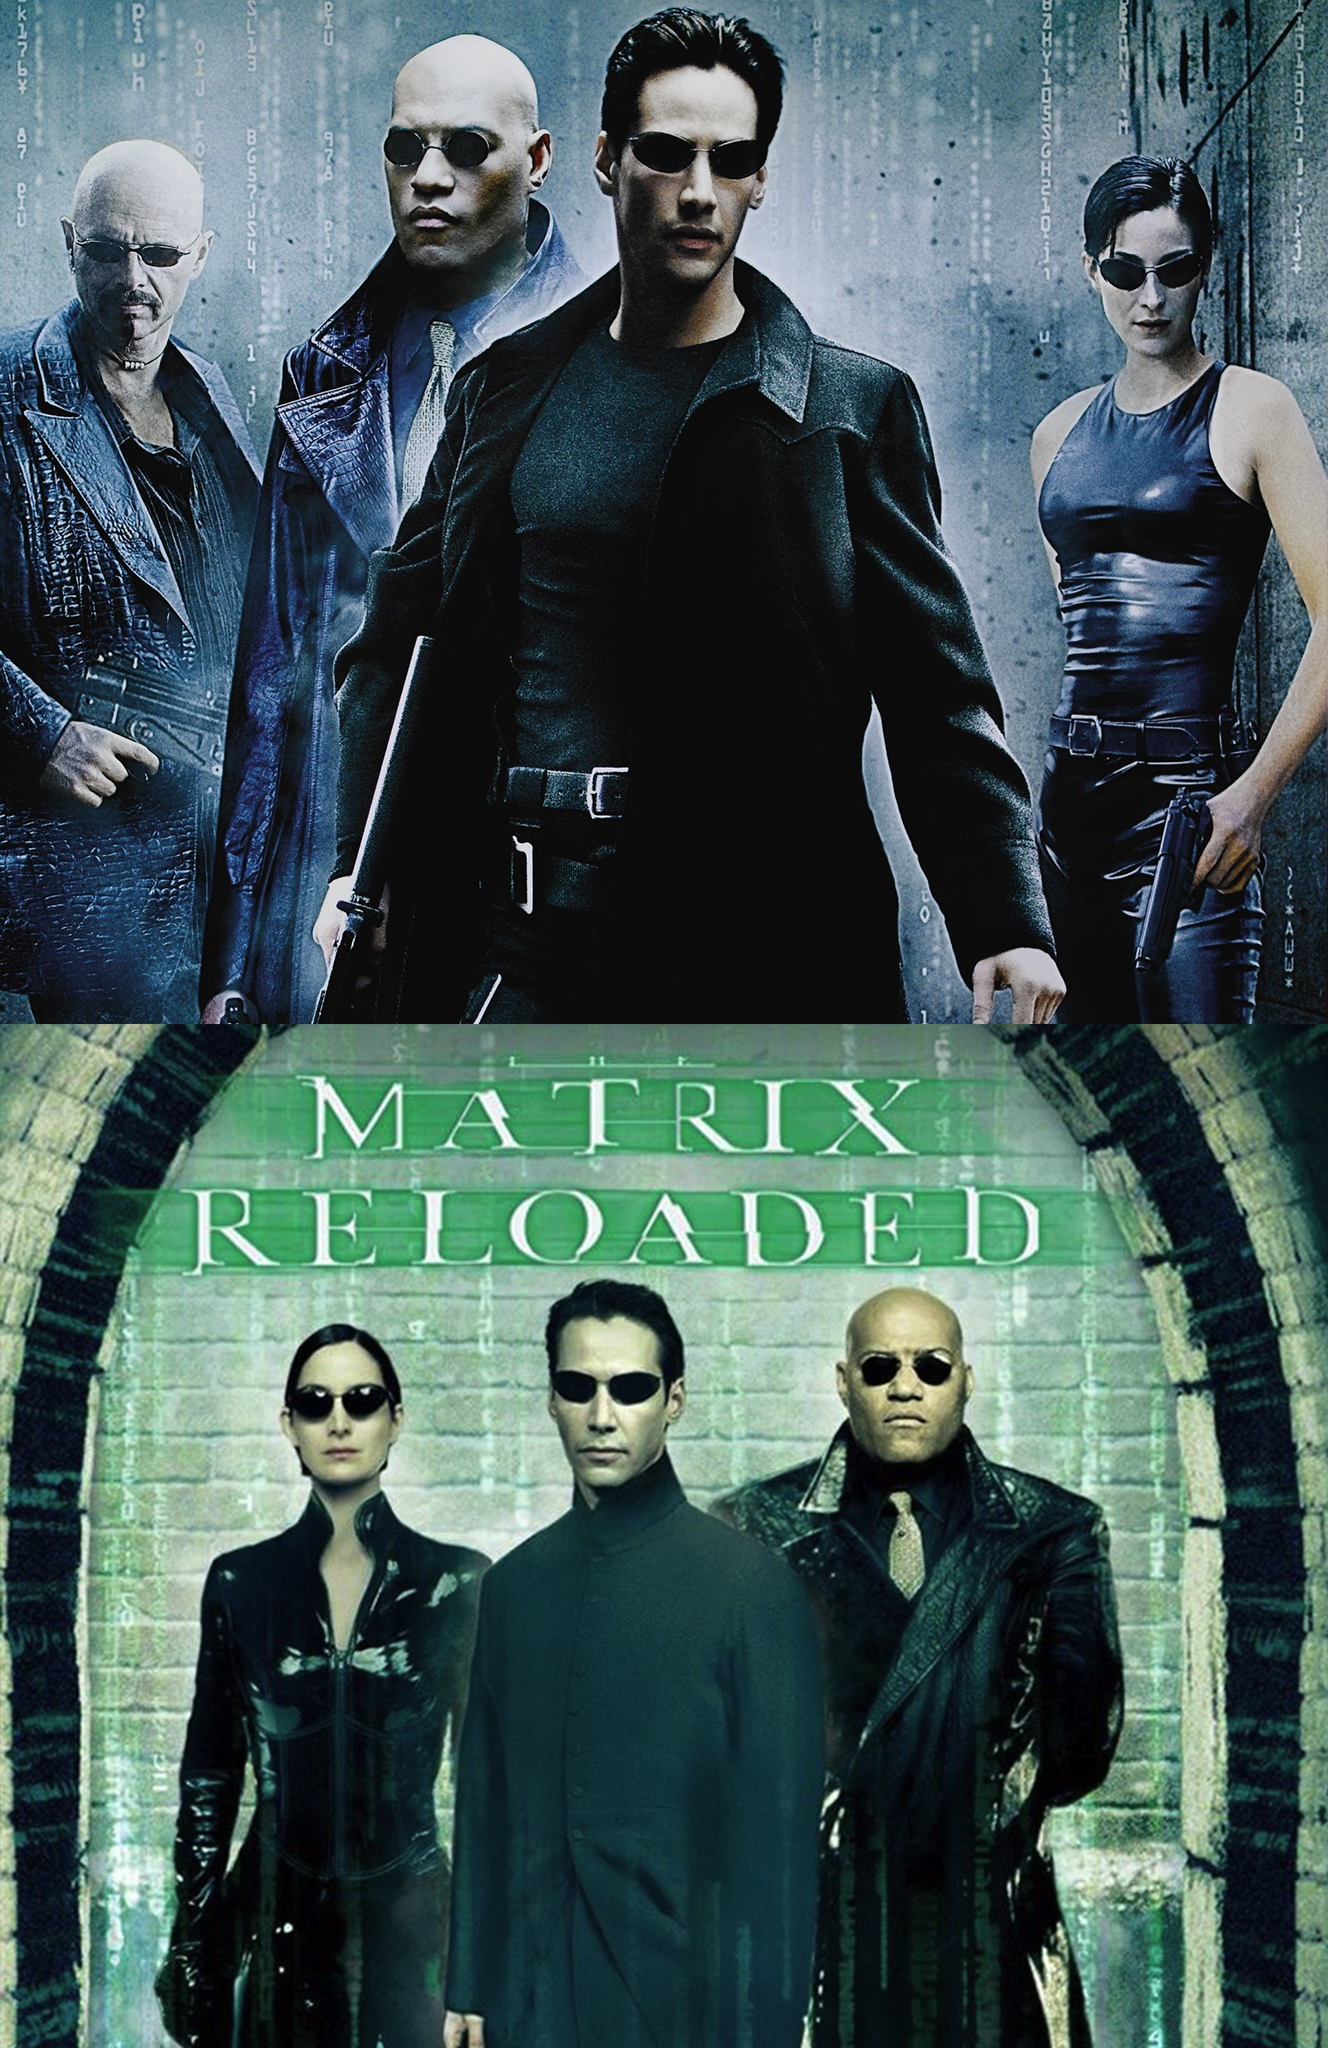 matrix cast